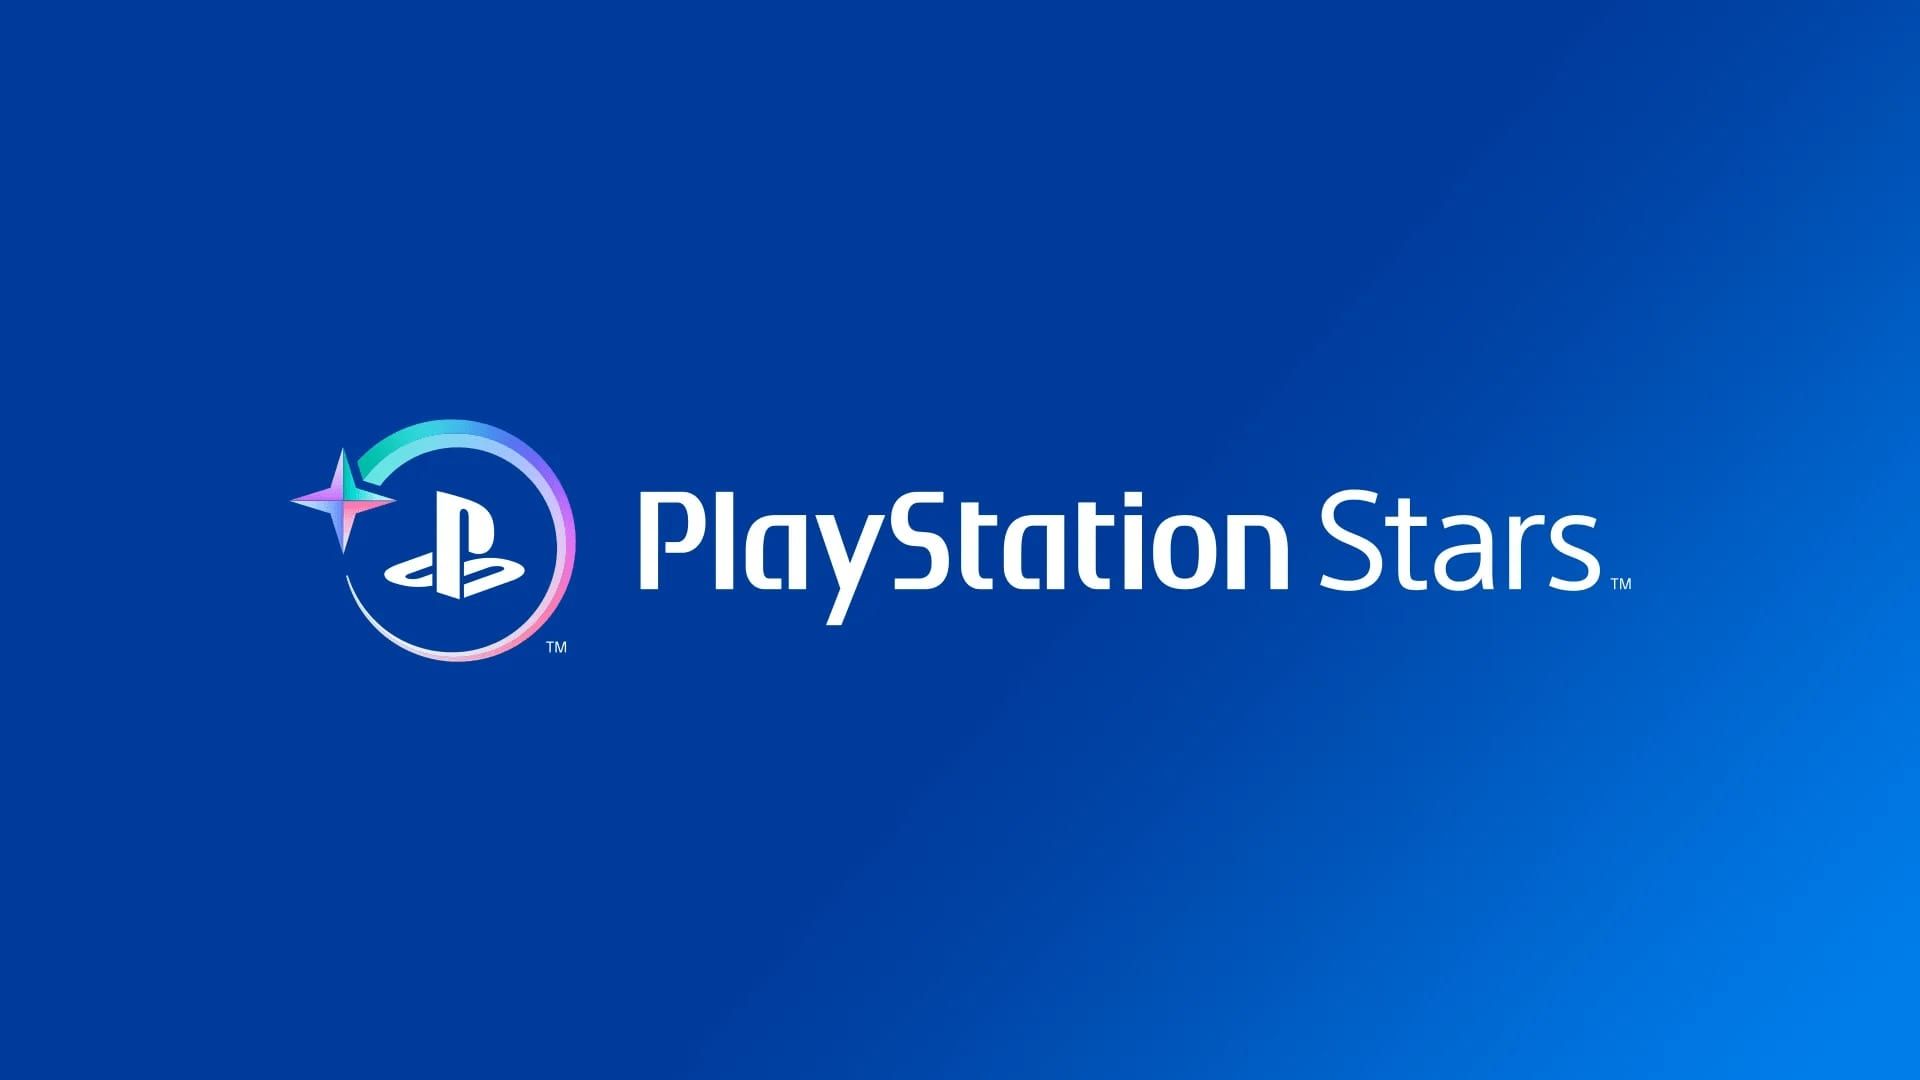 Программа лояльности Sony PlayStation Stars запускается в США на следующей неделе